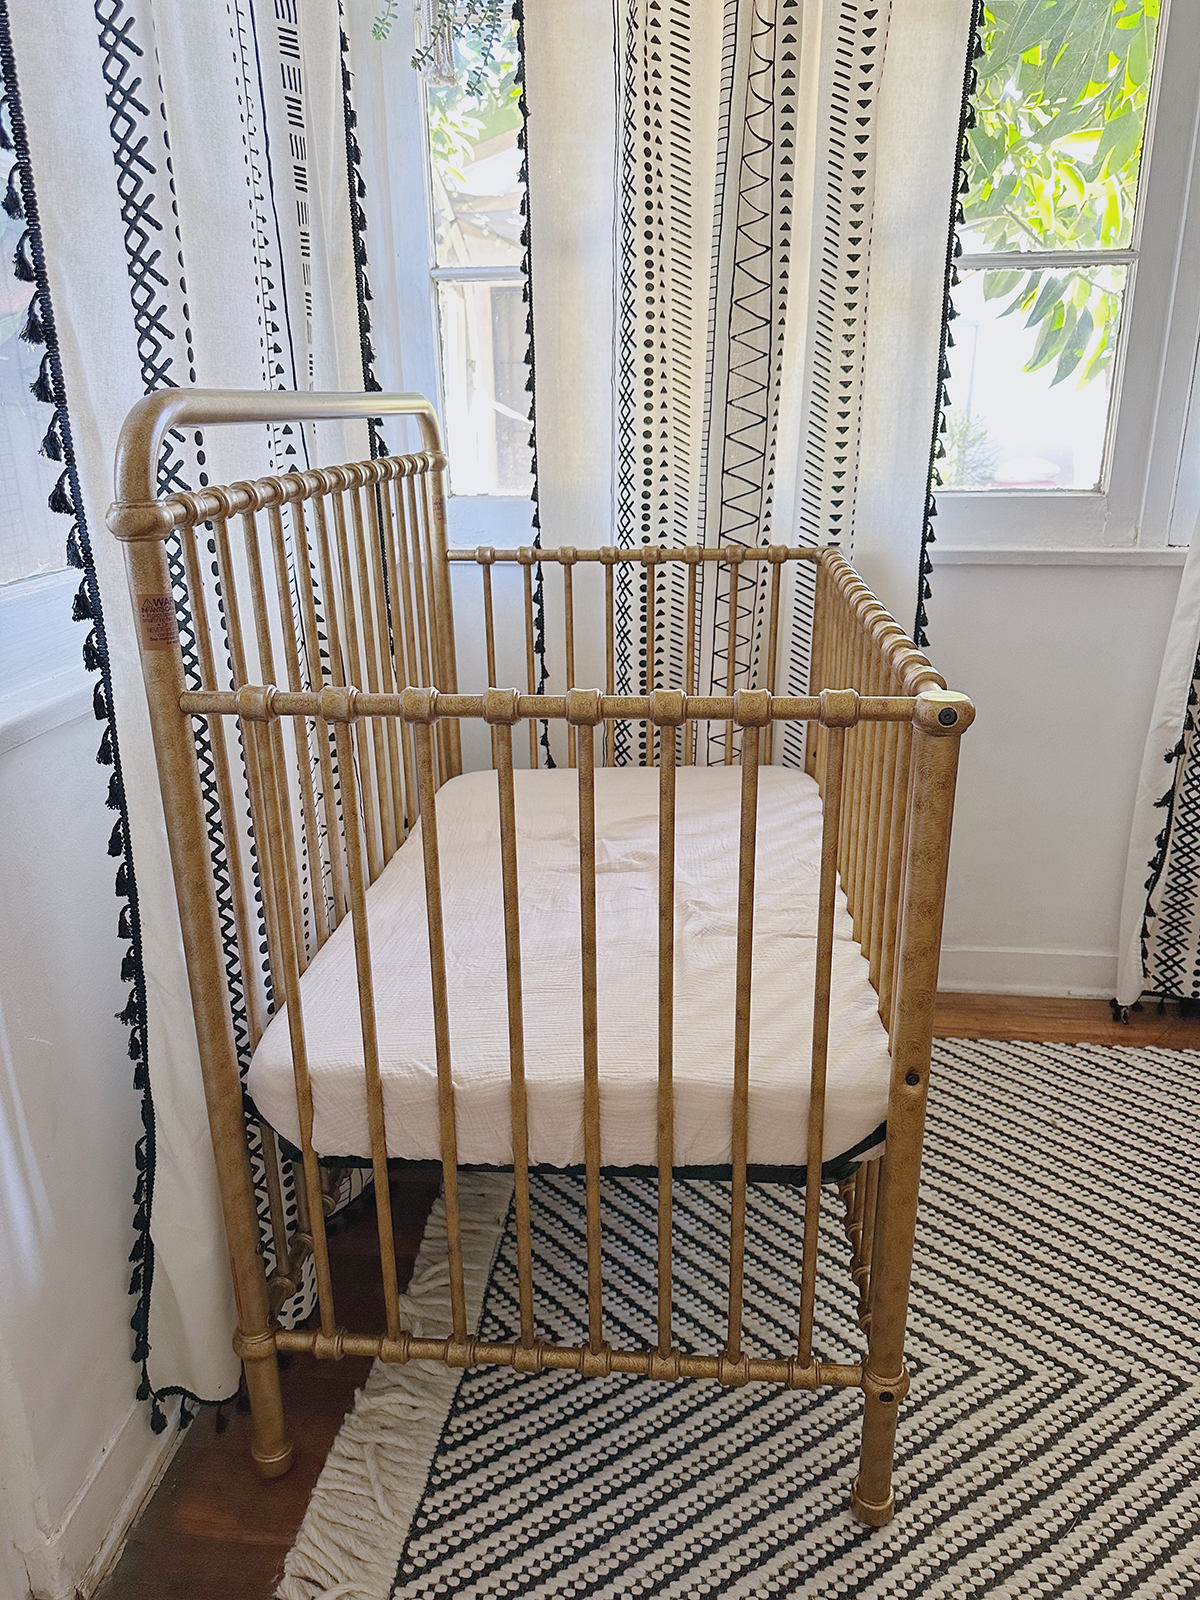 Antique gold mini crib